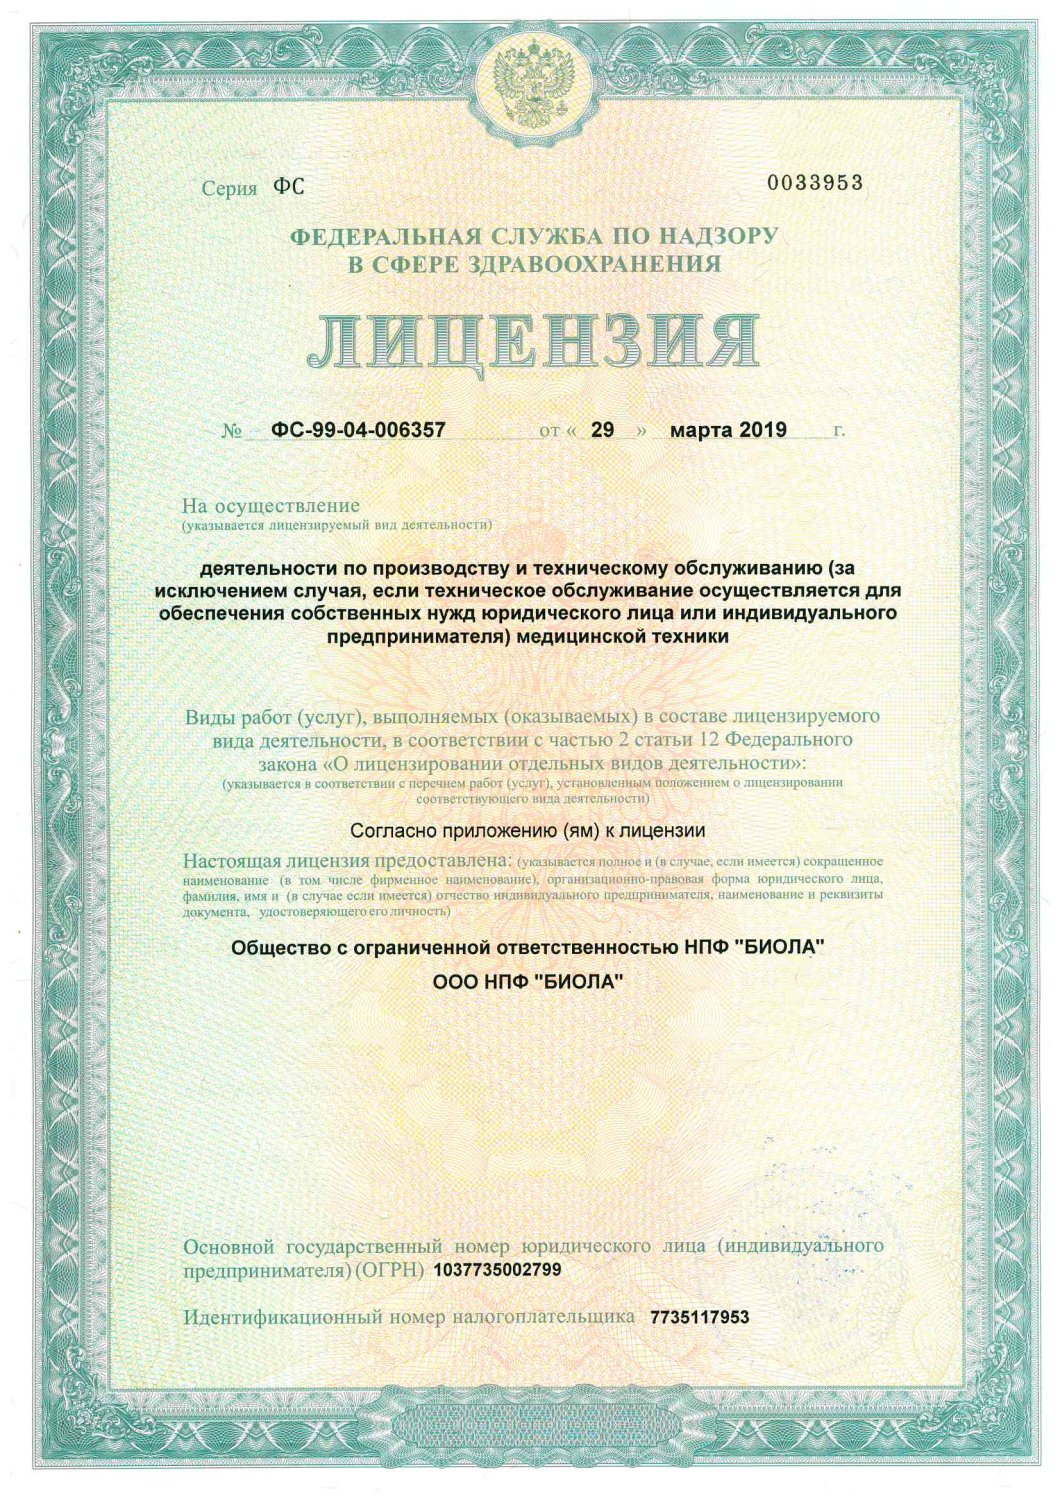 Лицензия деятельности по производству и техническому обслуживанию медицинской техники